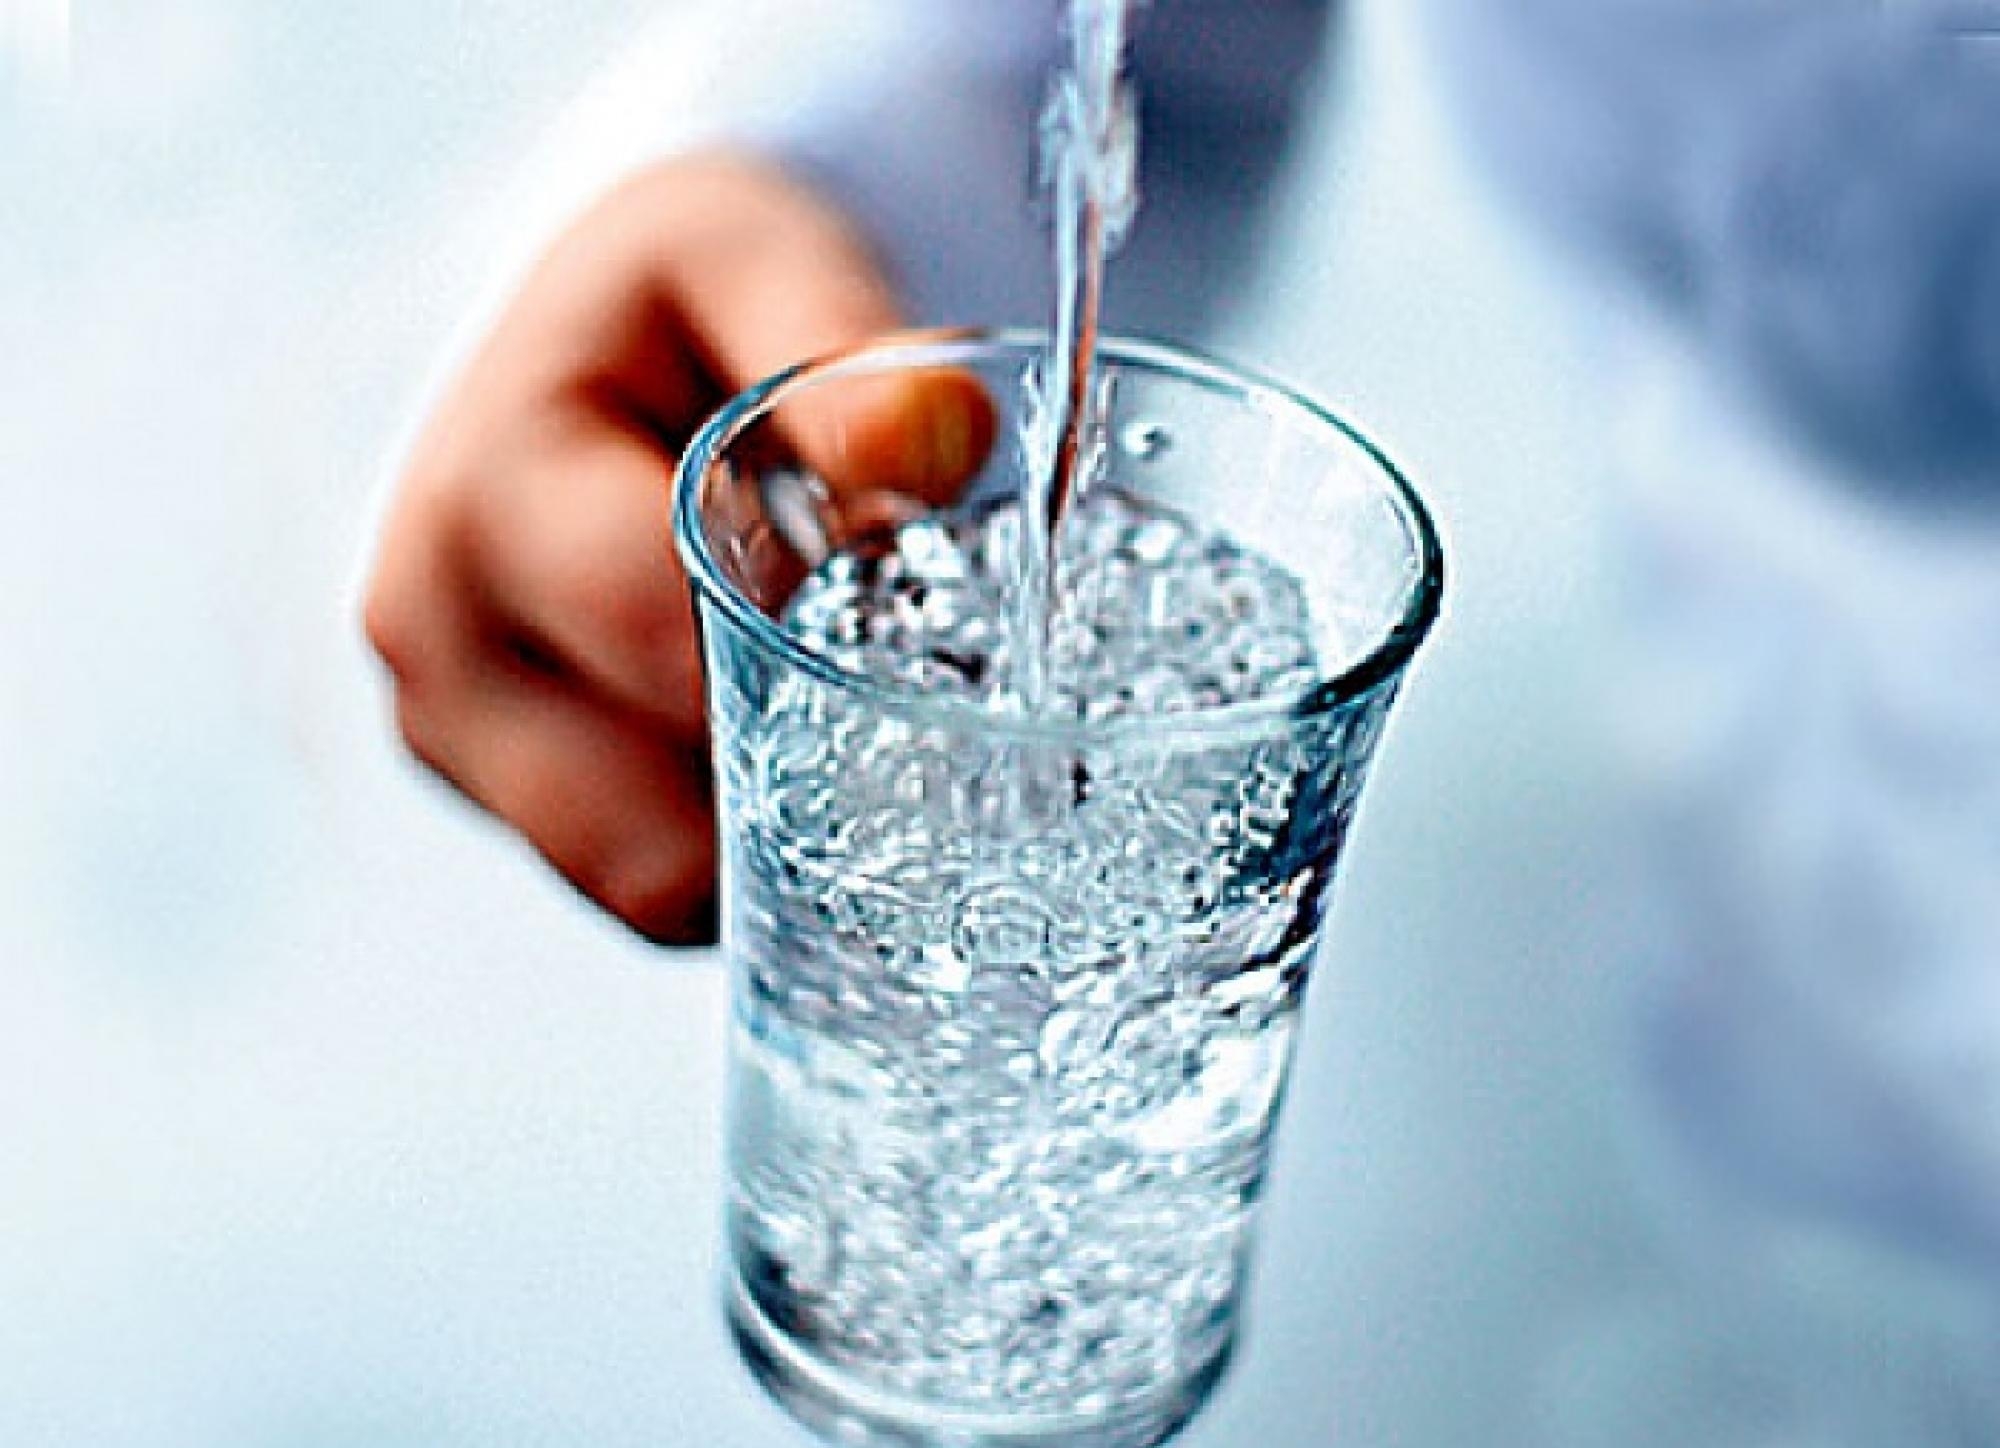 чистая вода как показатель улучшения уровня жизни населения